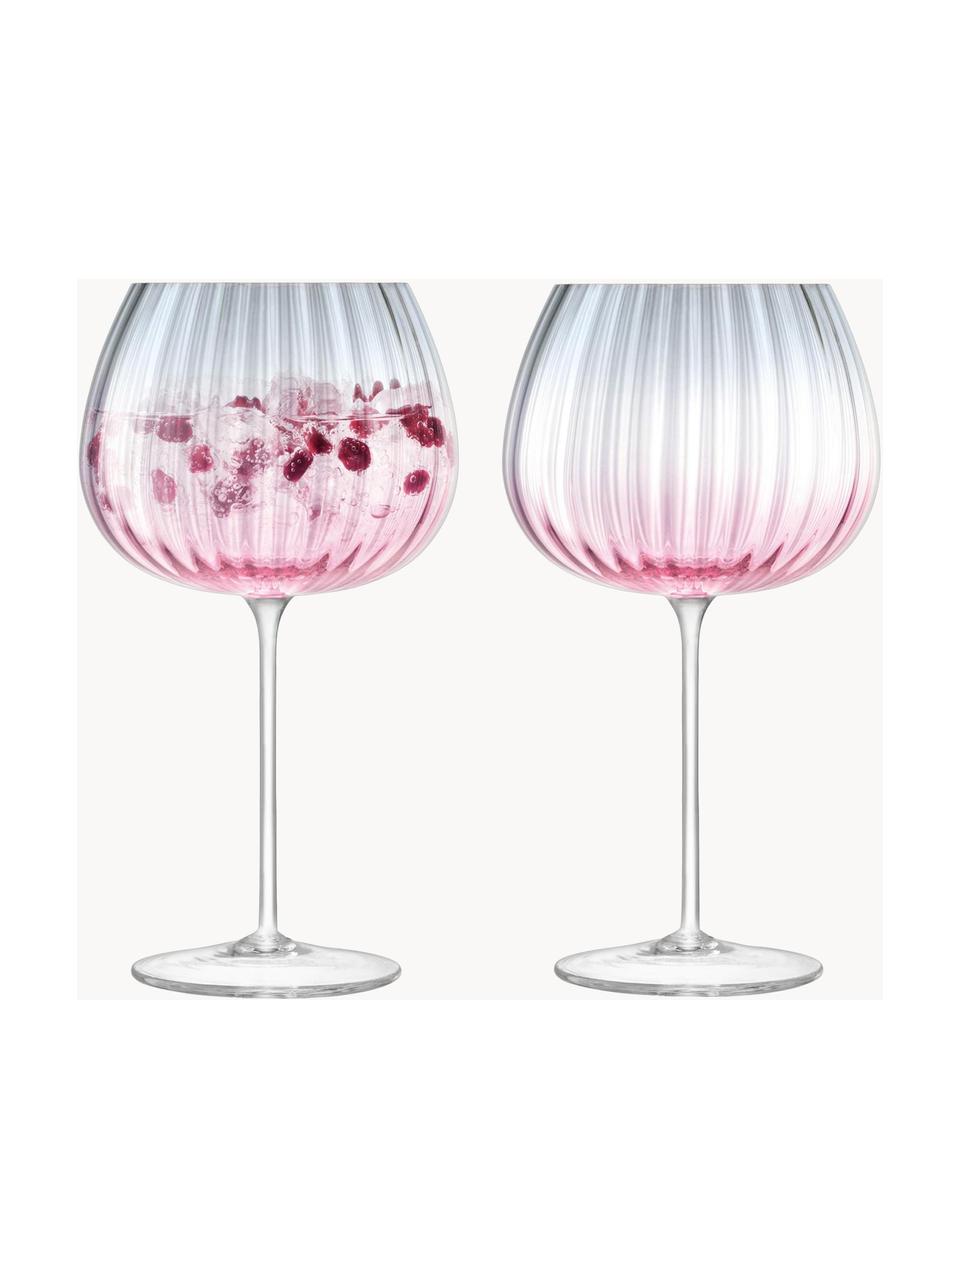 Handgemachte Weingläser Dusk mit Farbverlauf, 2 Stück, Glas, Rosa, Grau, Transparent, Ø 10 x H 20 cm, 650 ml